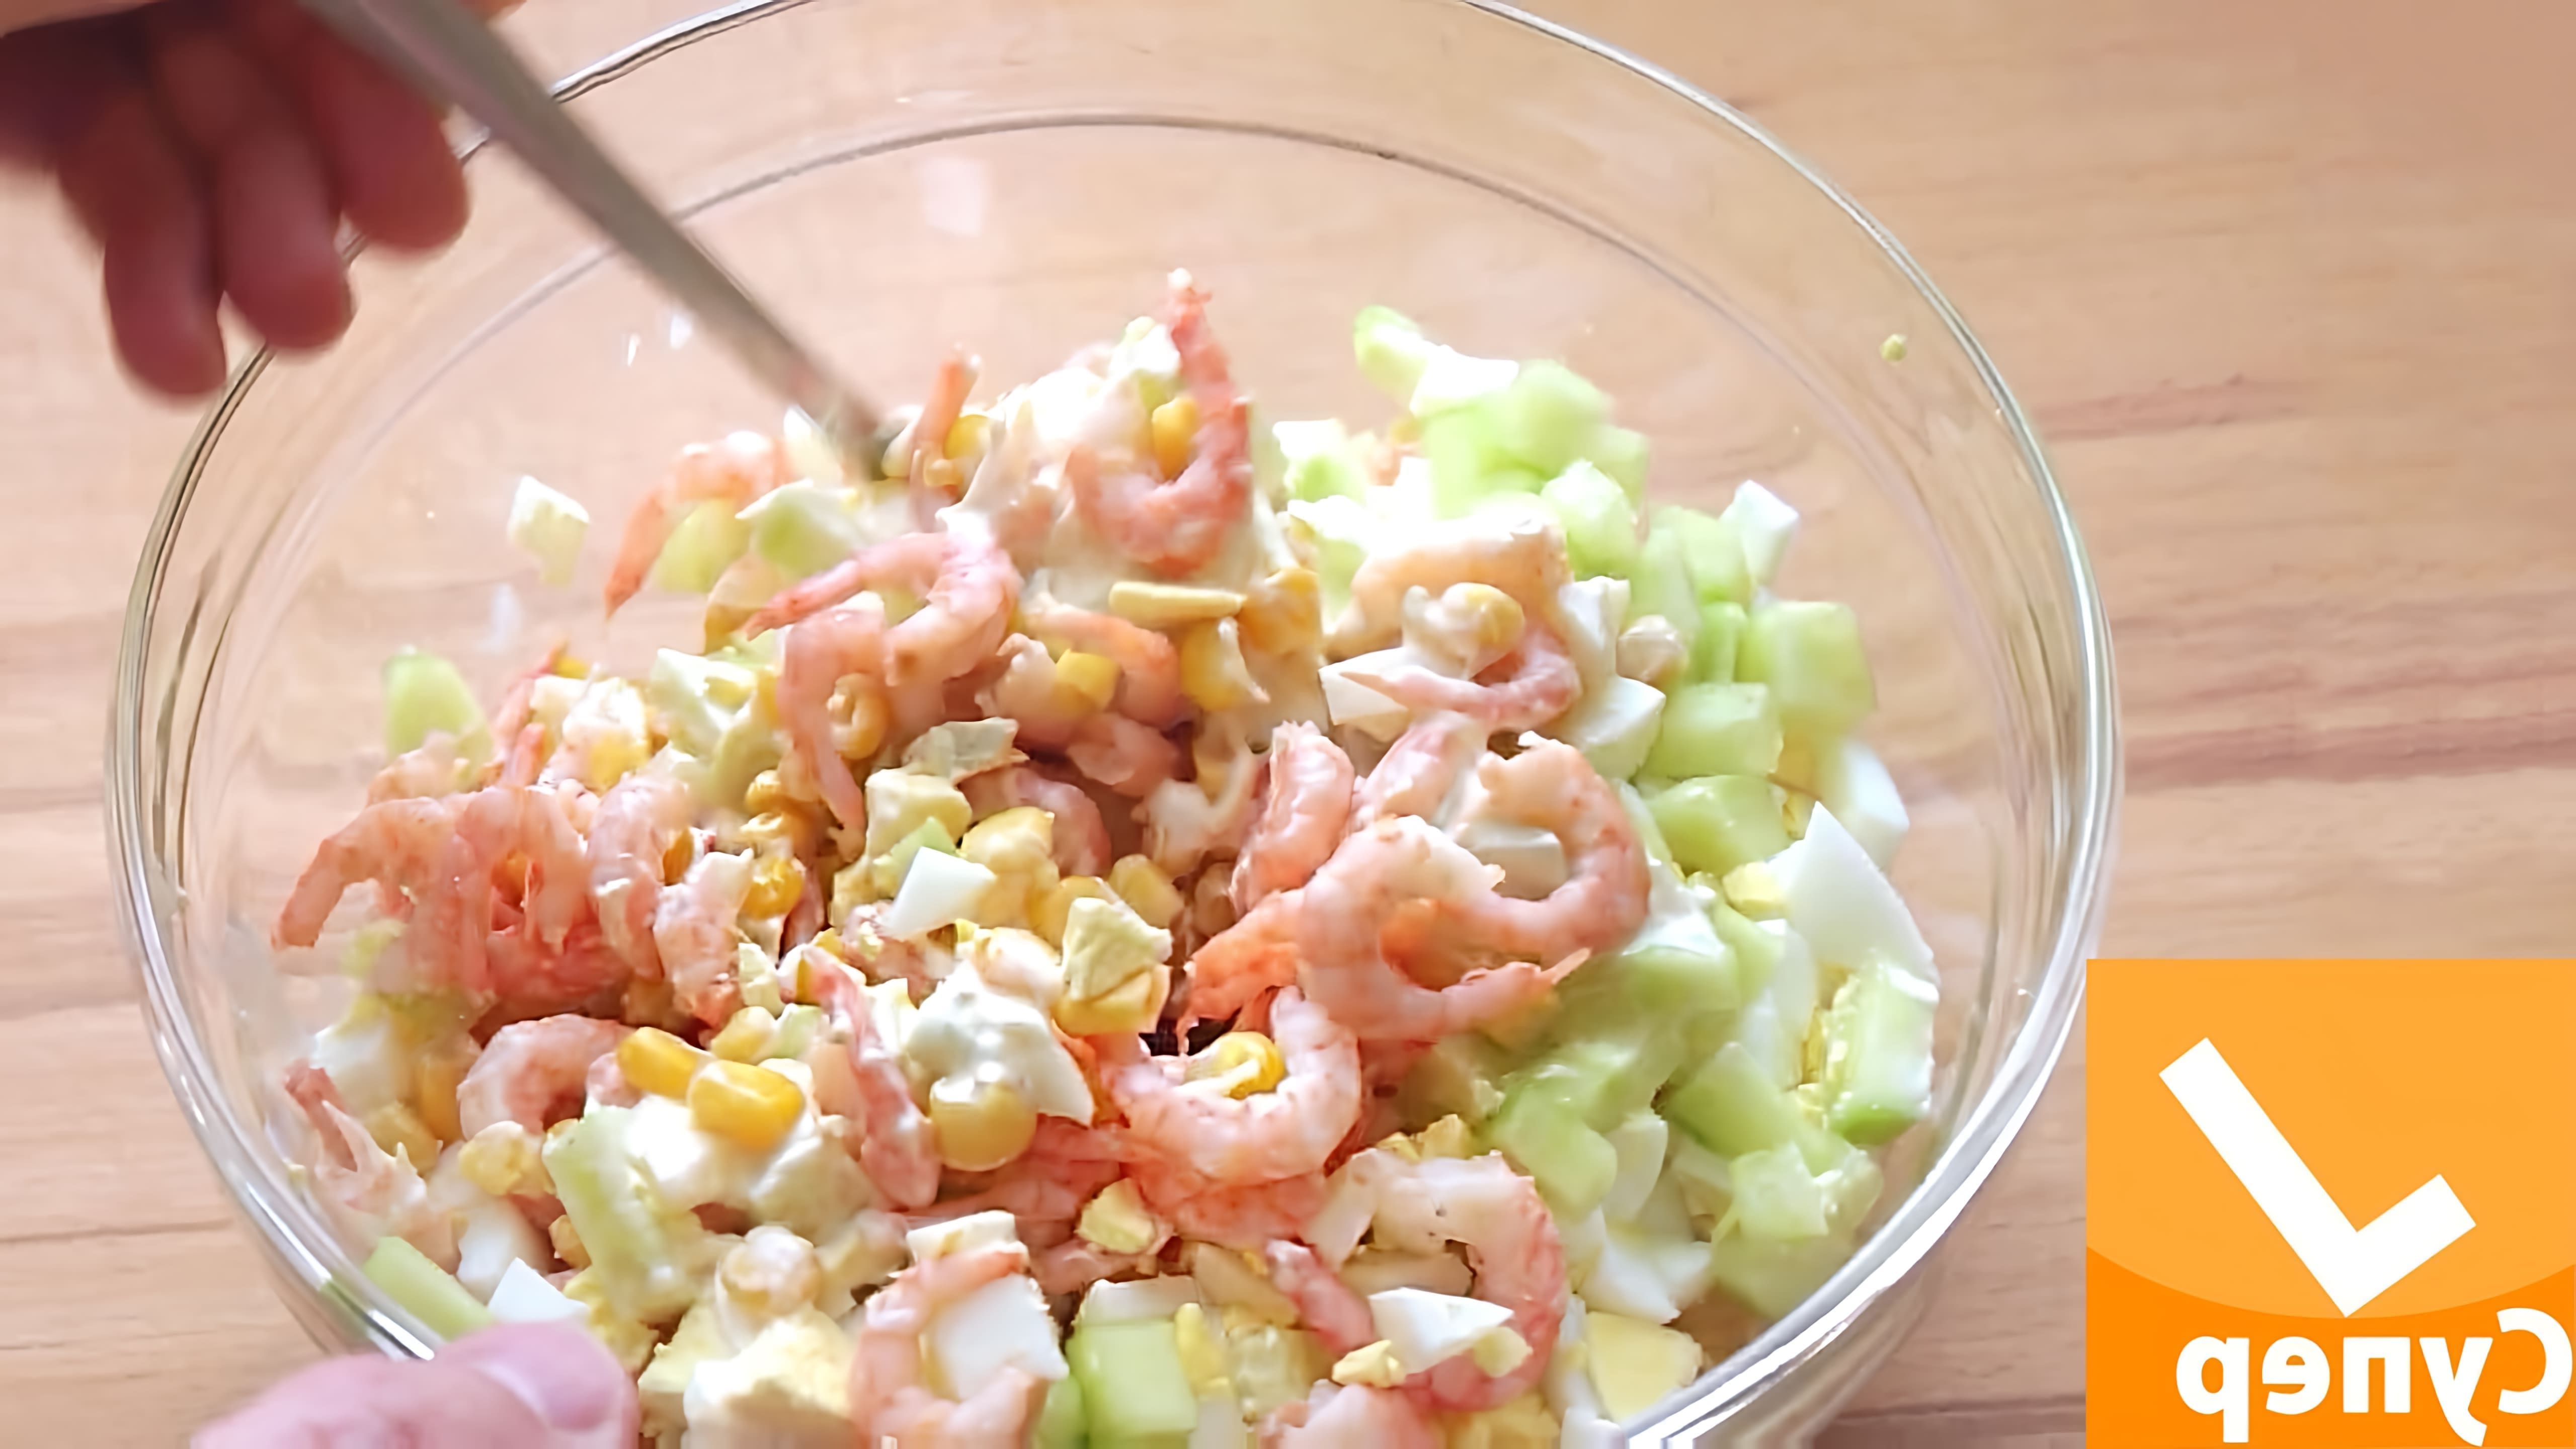 Видео рецепт салата с креветками, который описывается как очень вкусный и простой